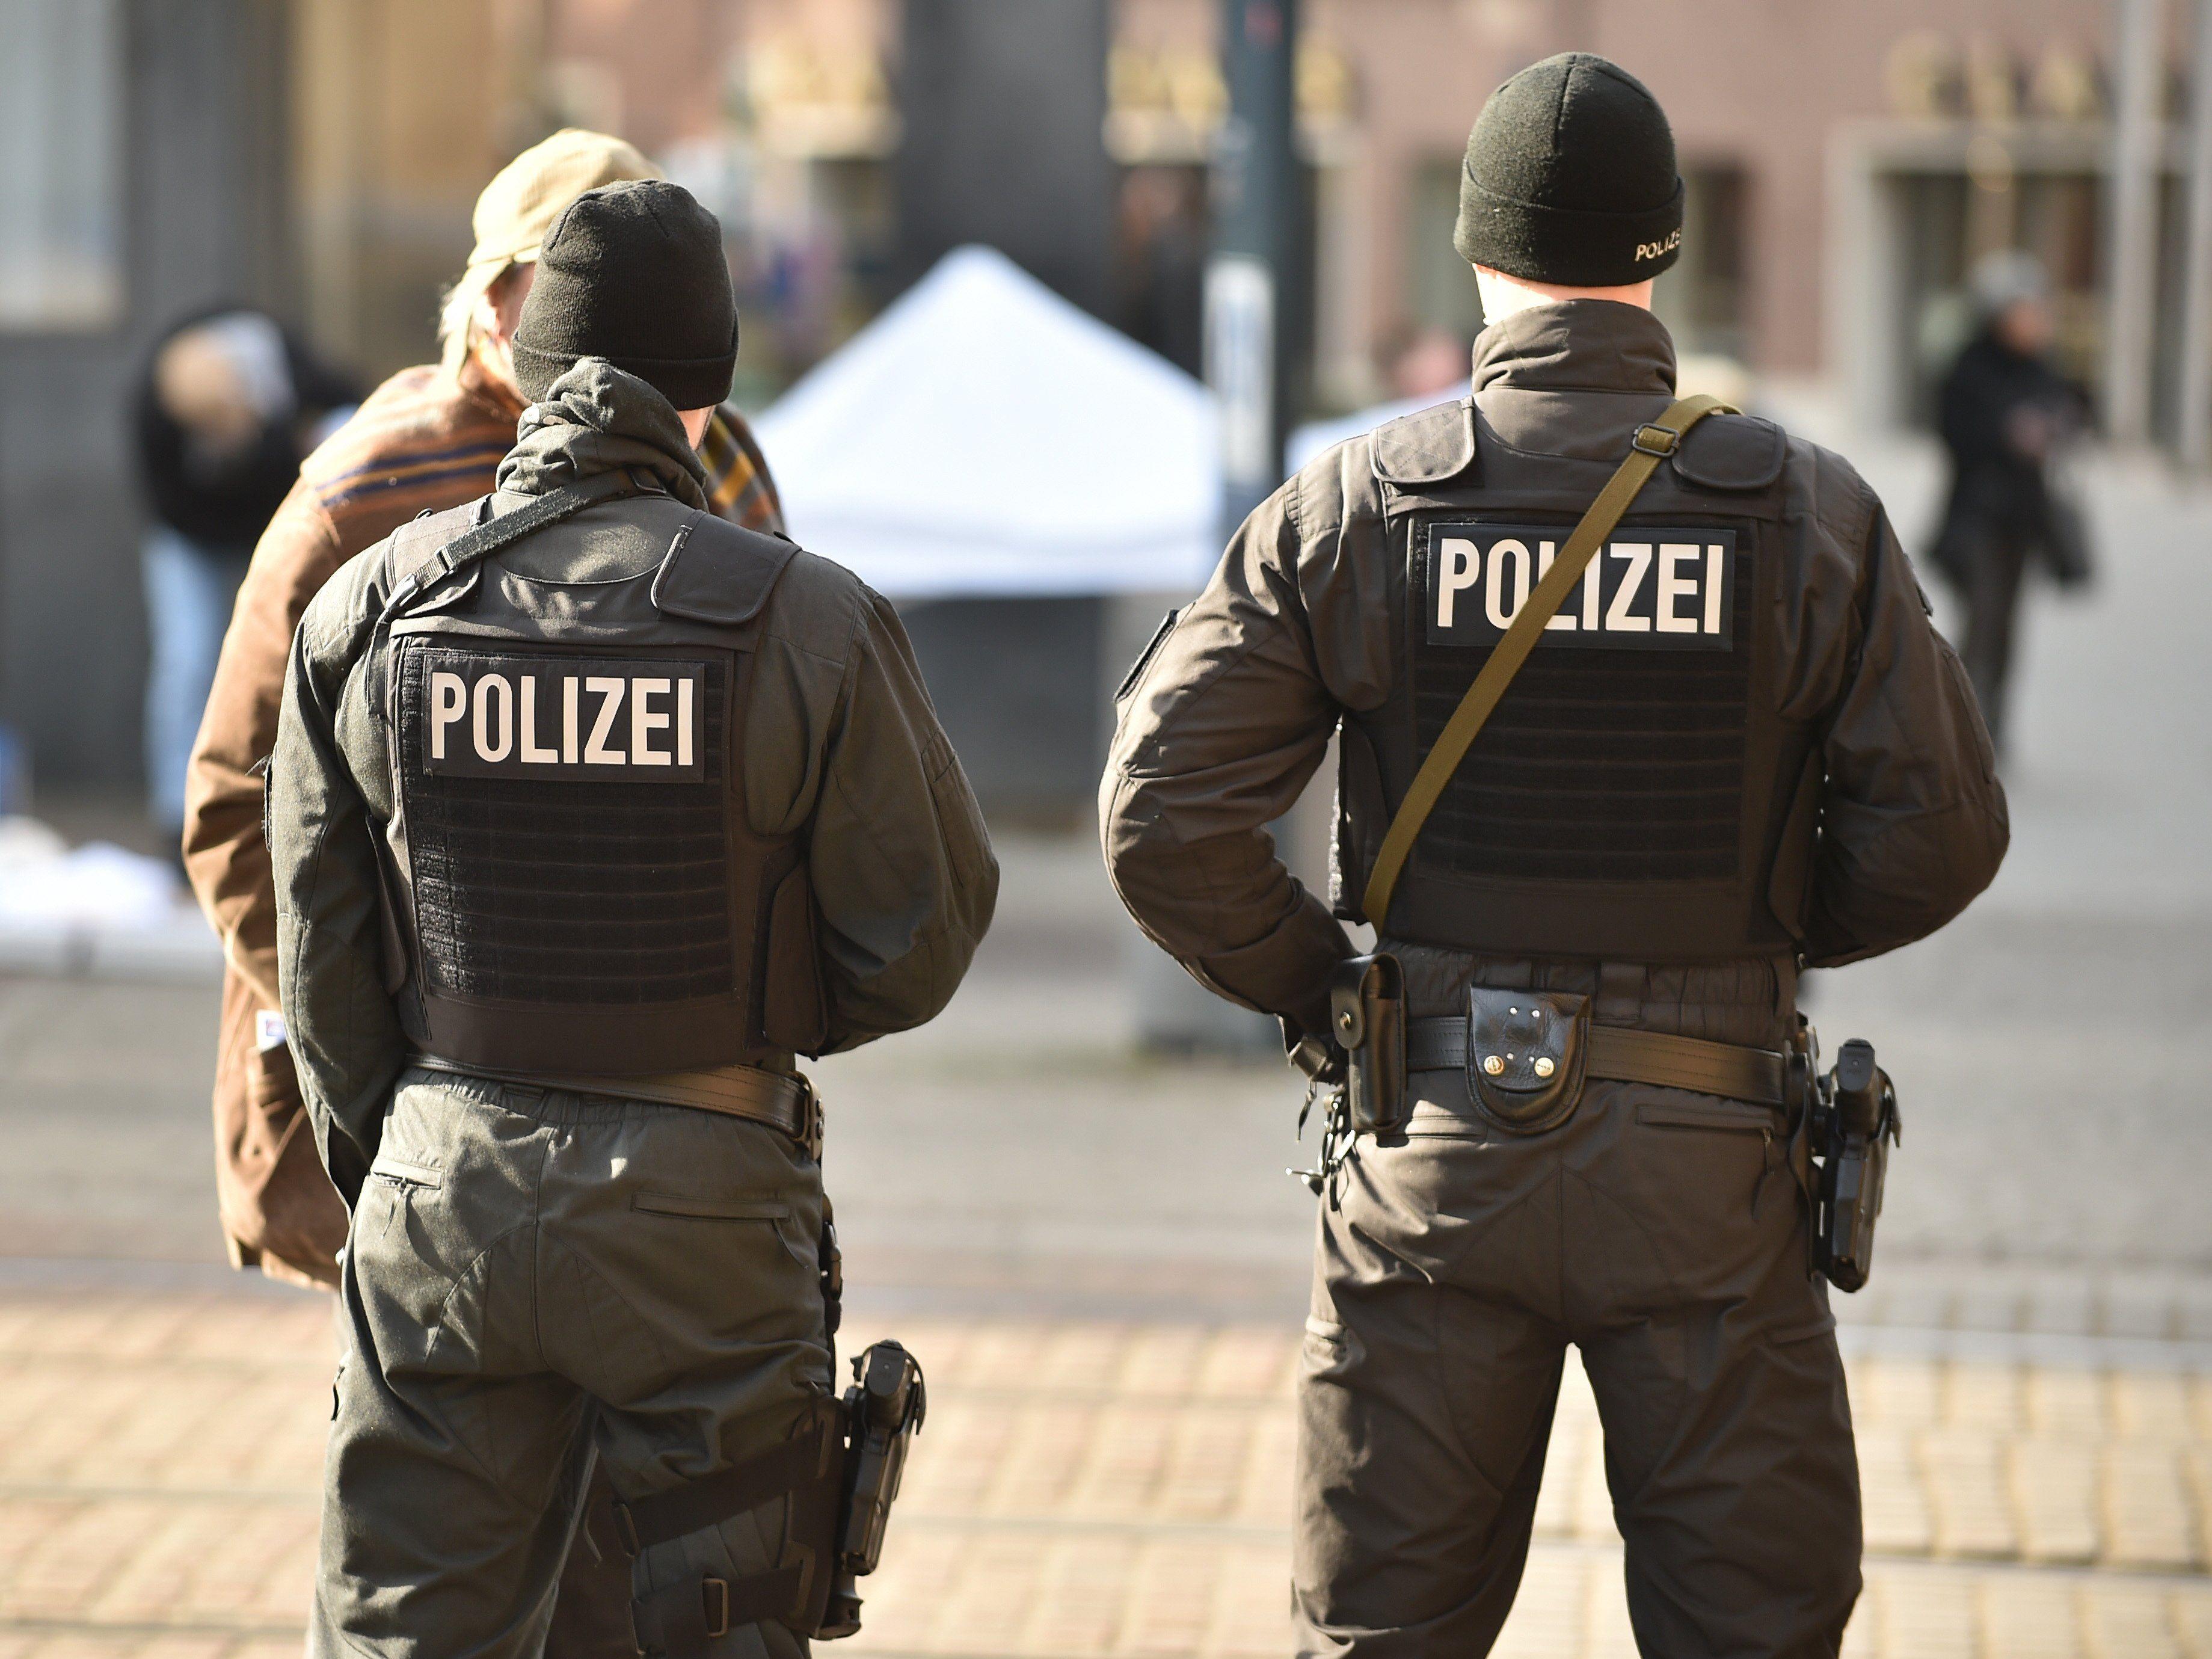 Die deutsche Polizei sucht noch immer nach den kinox.to-Betreibern.